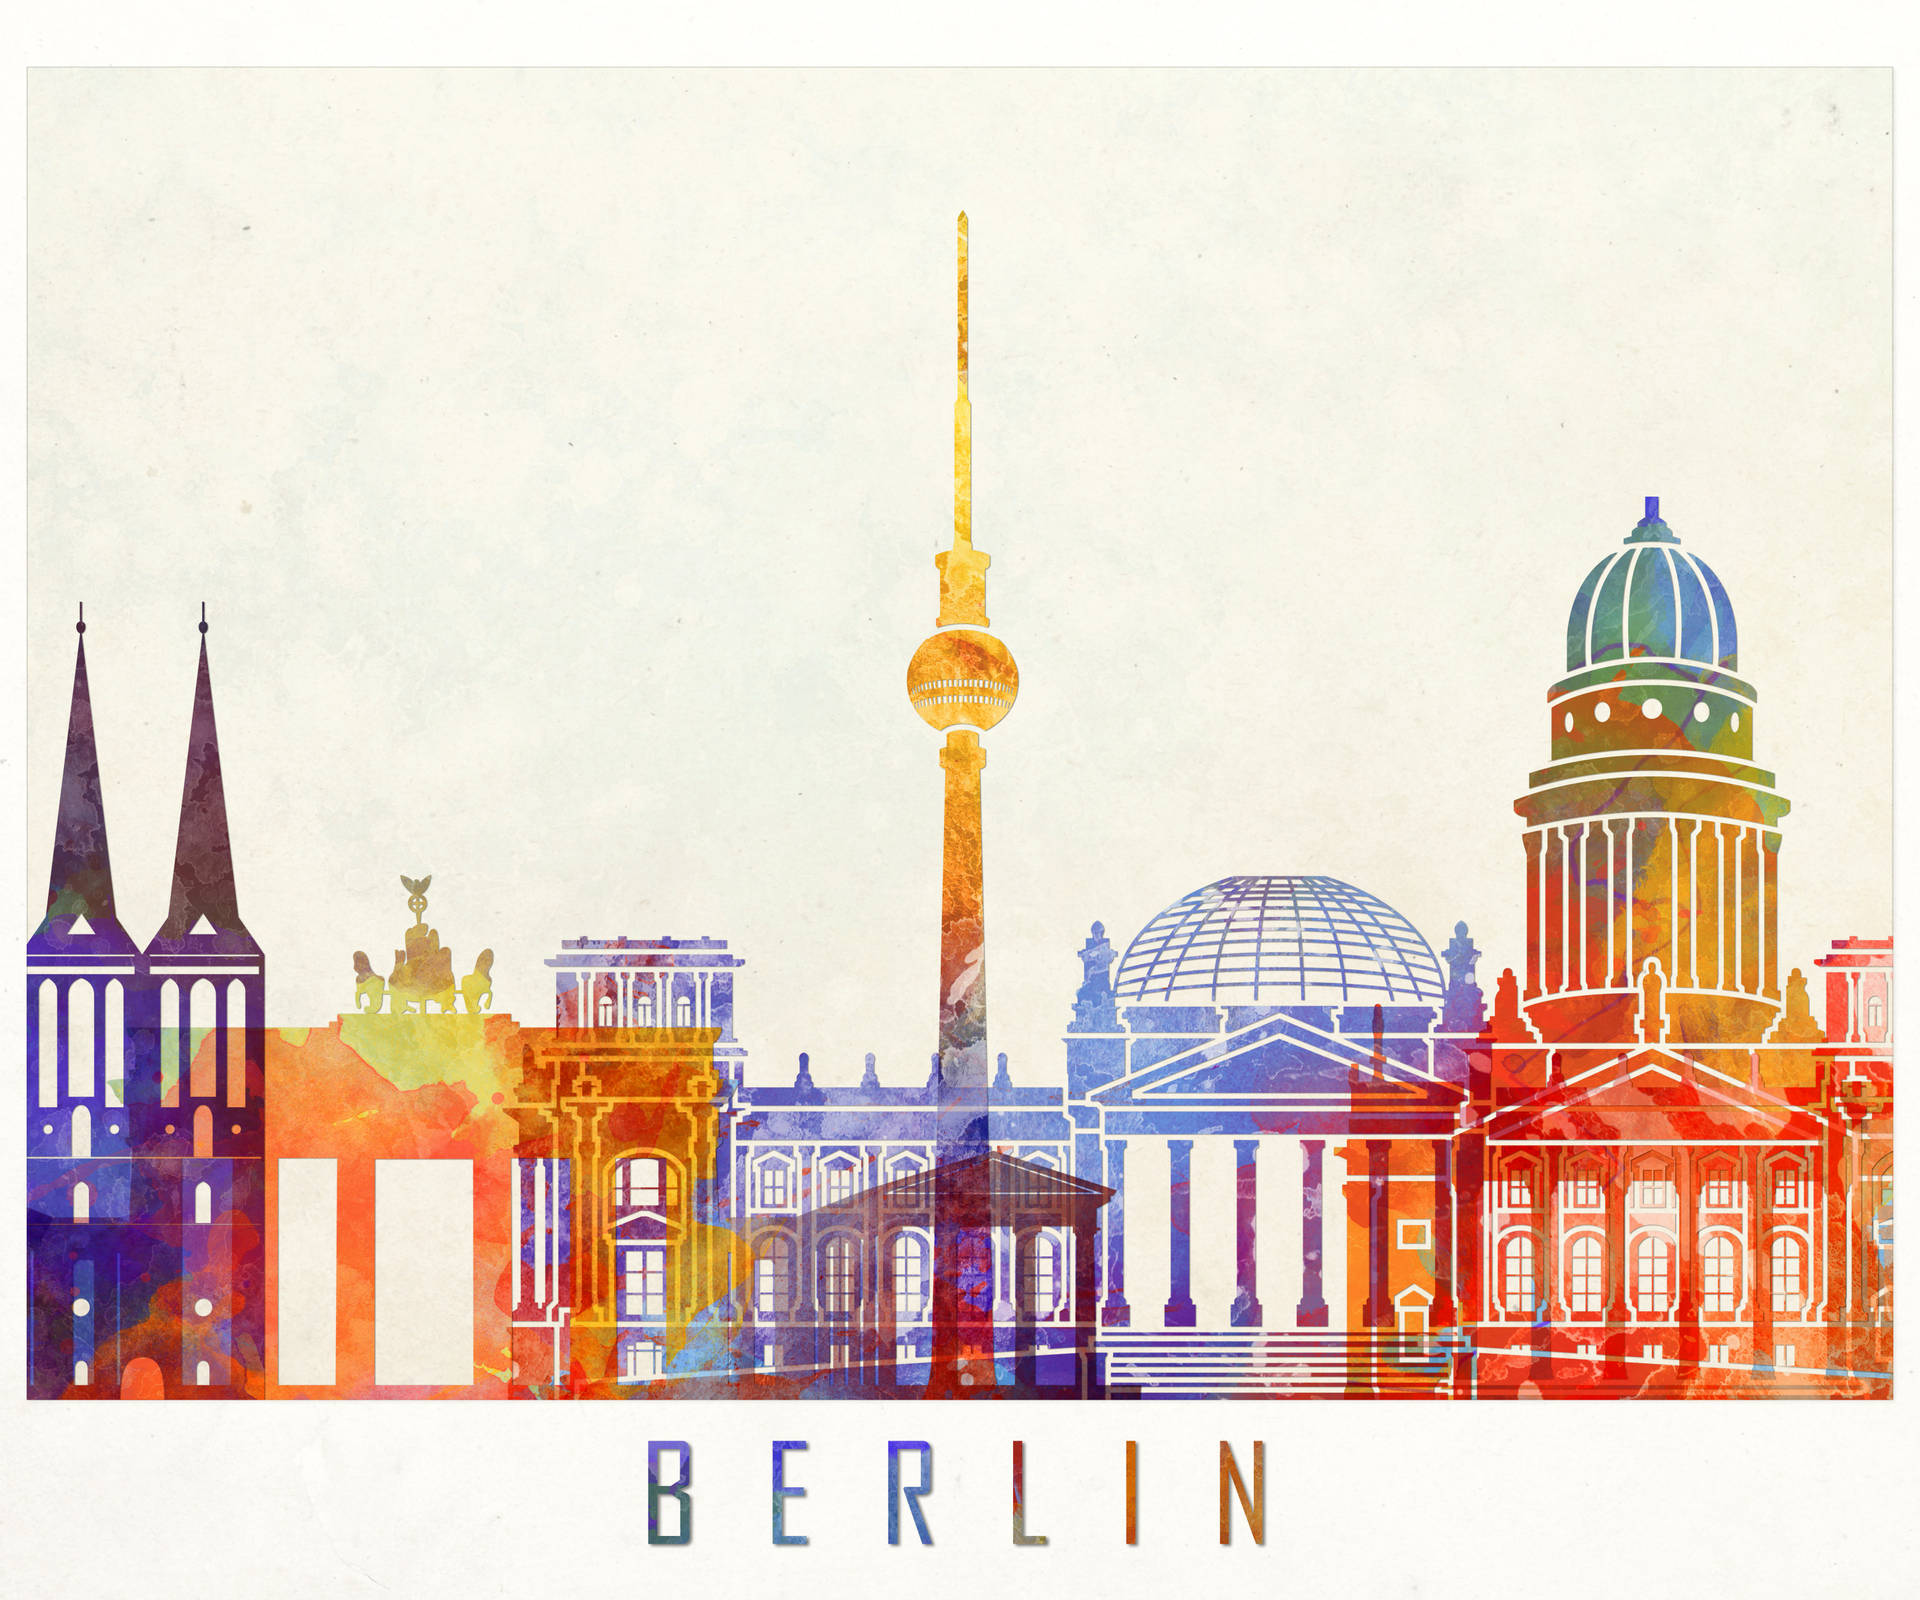 Berlin Tourists Spot Art Background